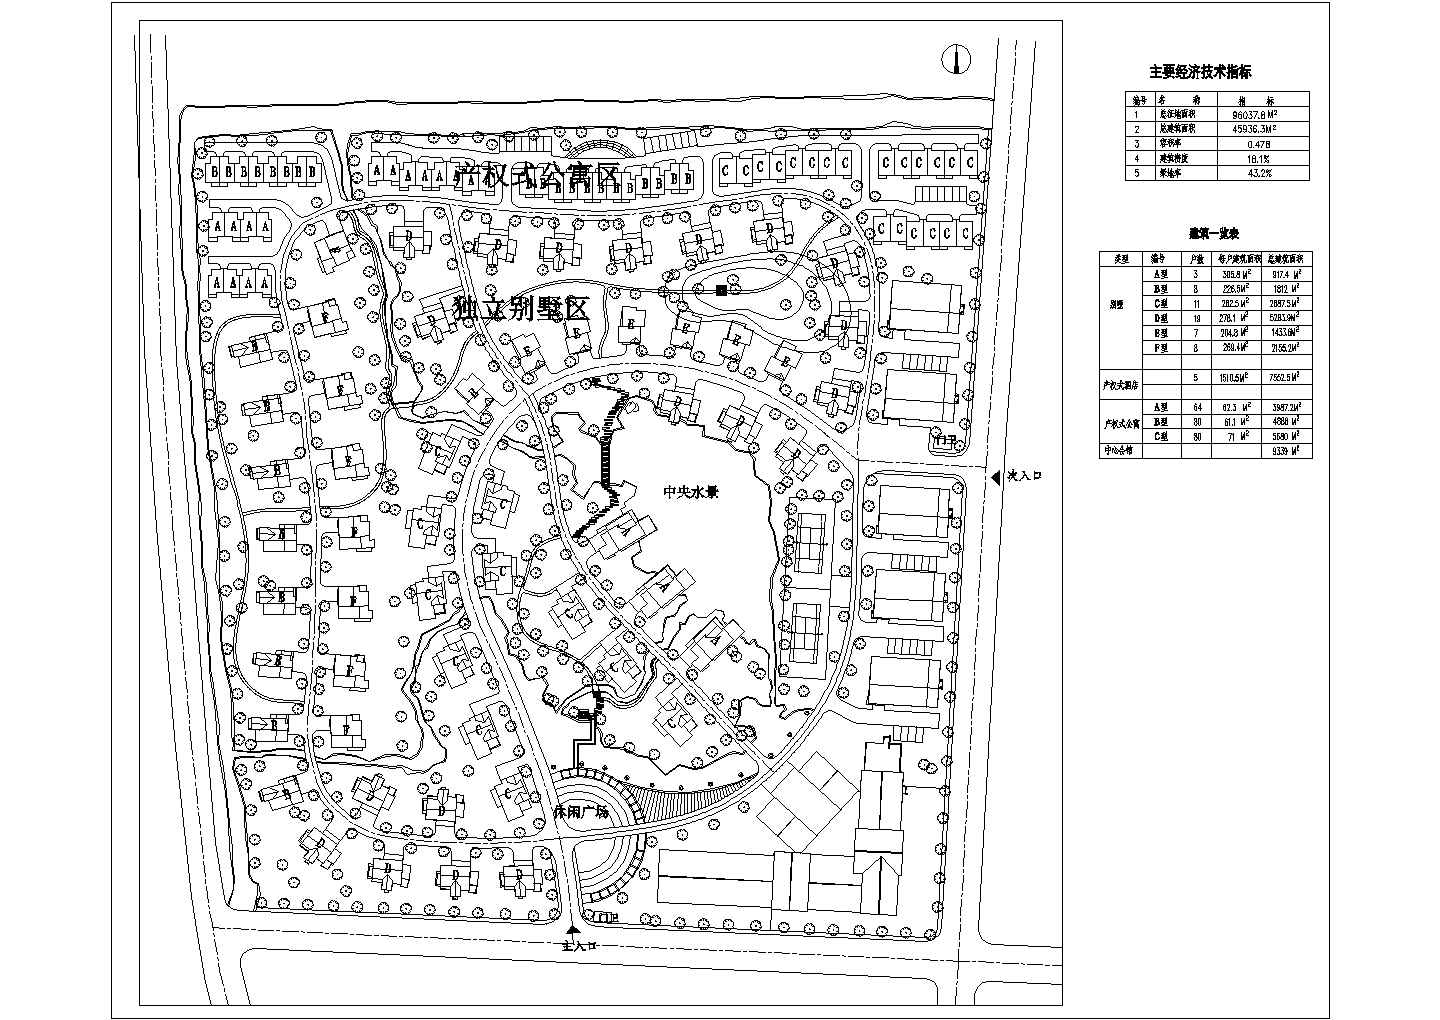 总征地面积96037.8平米某别墅小区的总体规划图